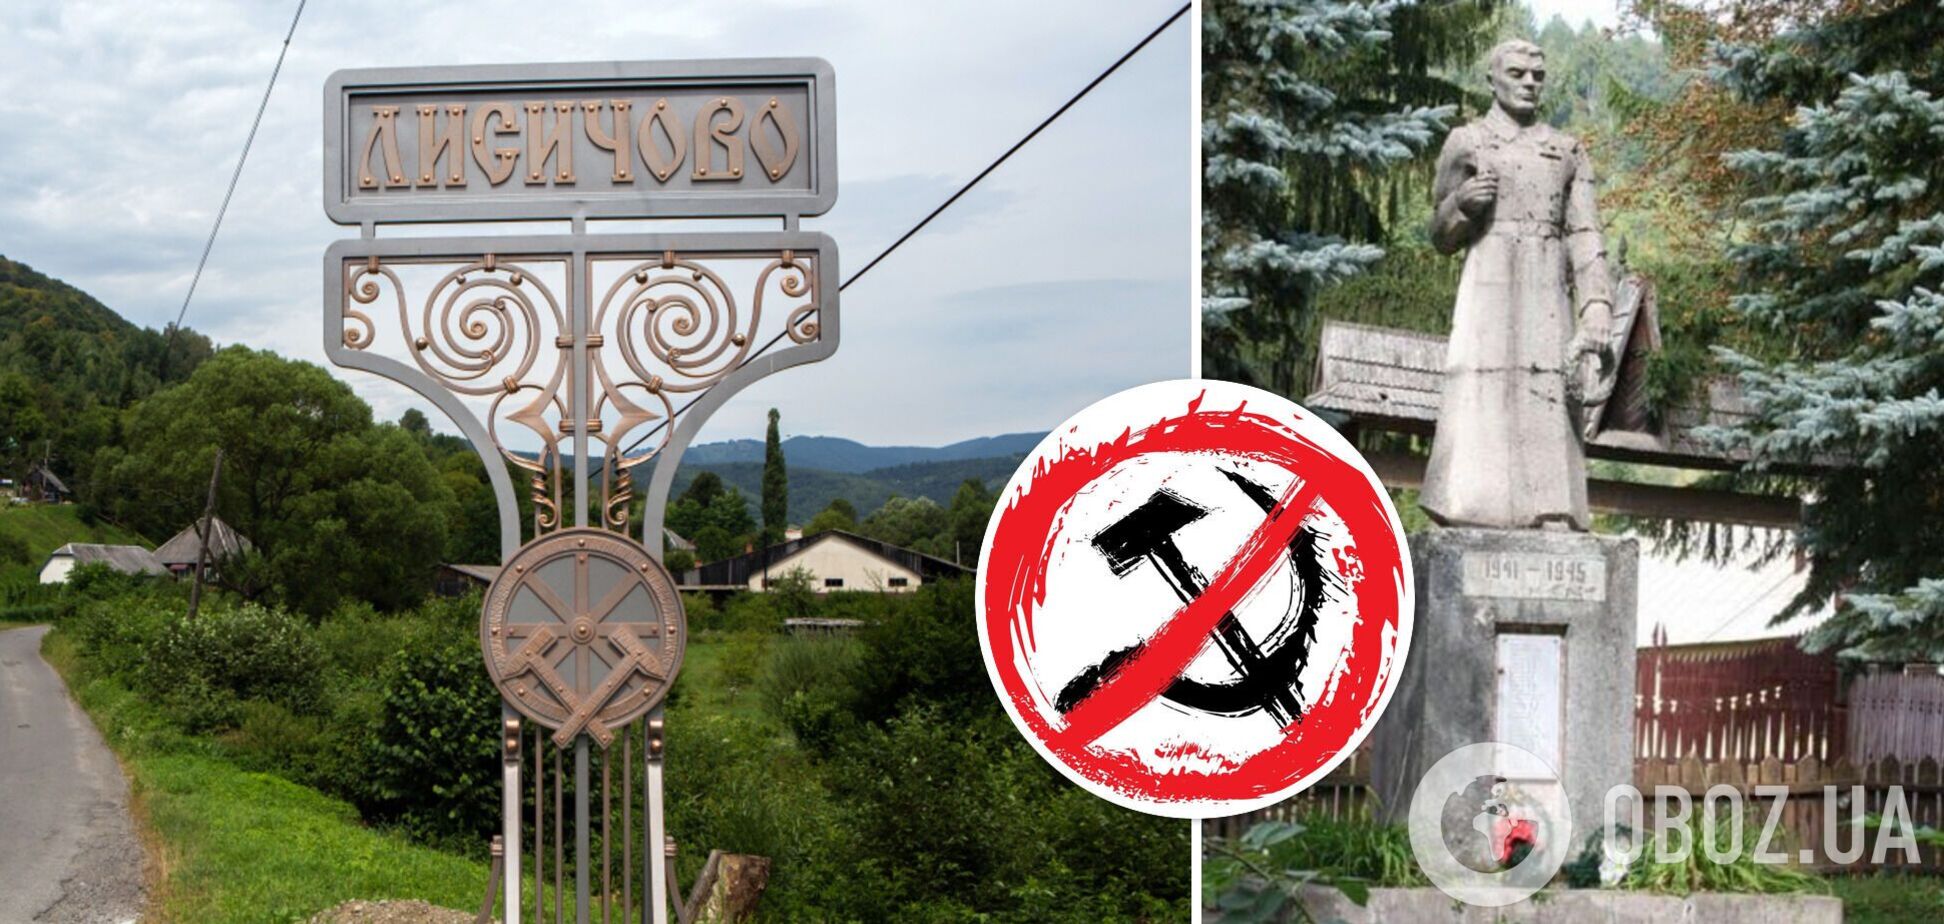 В селе на Закарпатье отказались убрать советский монумент, сделав его 'украинским'. Фото